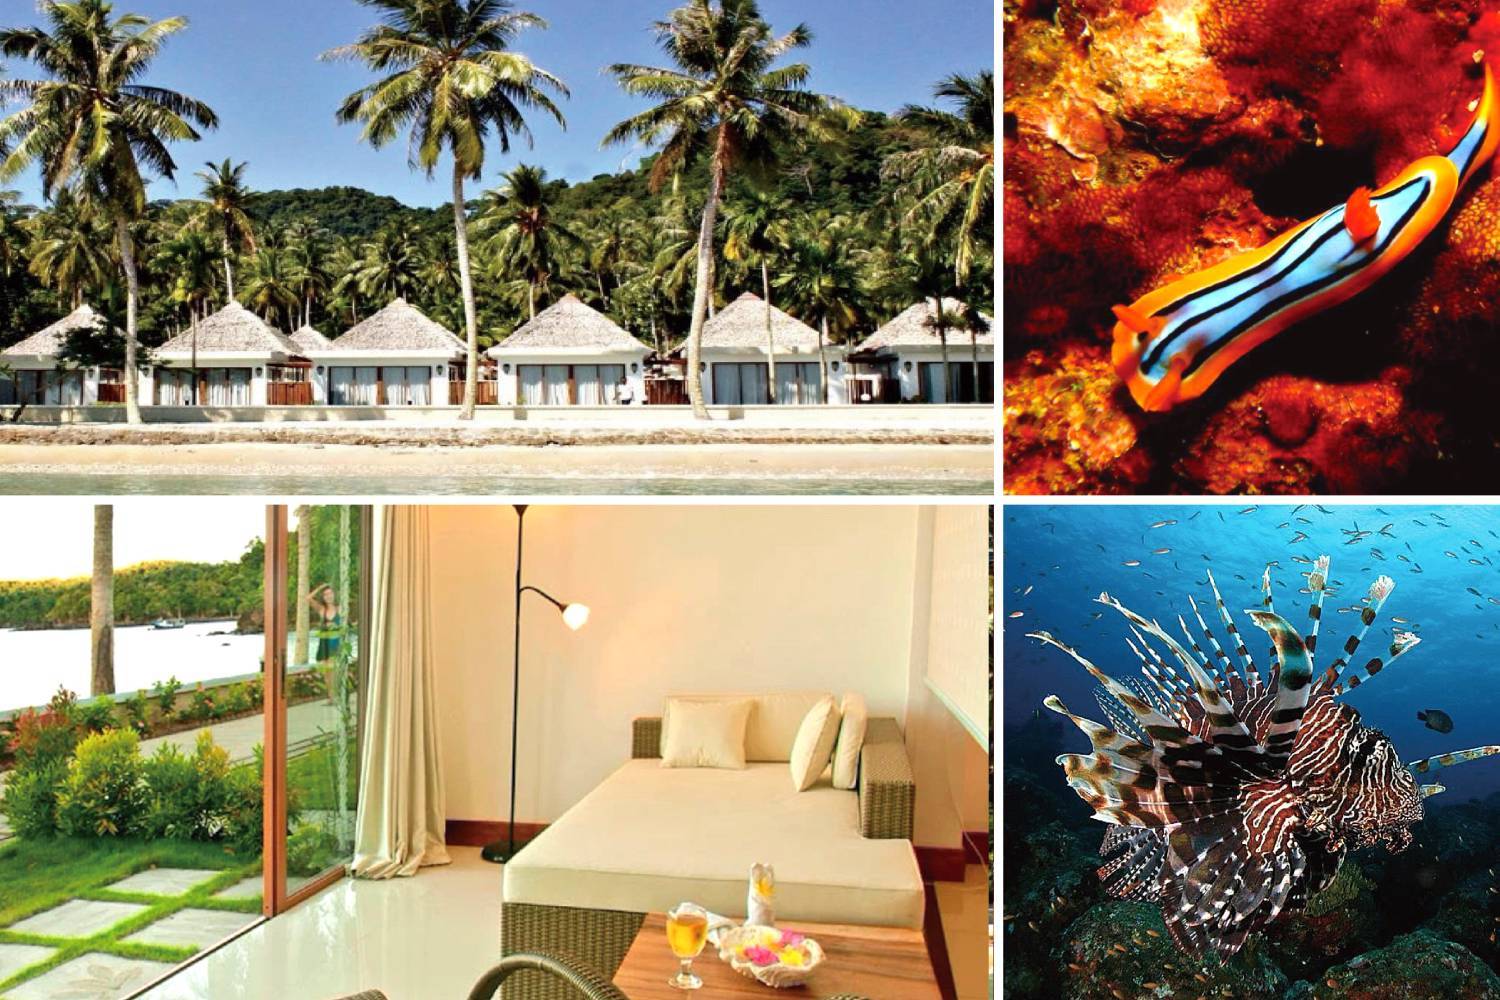 【Indonesia】Pulau Weh Resort 6 days 5 nights diving package